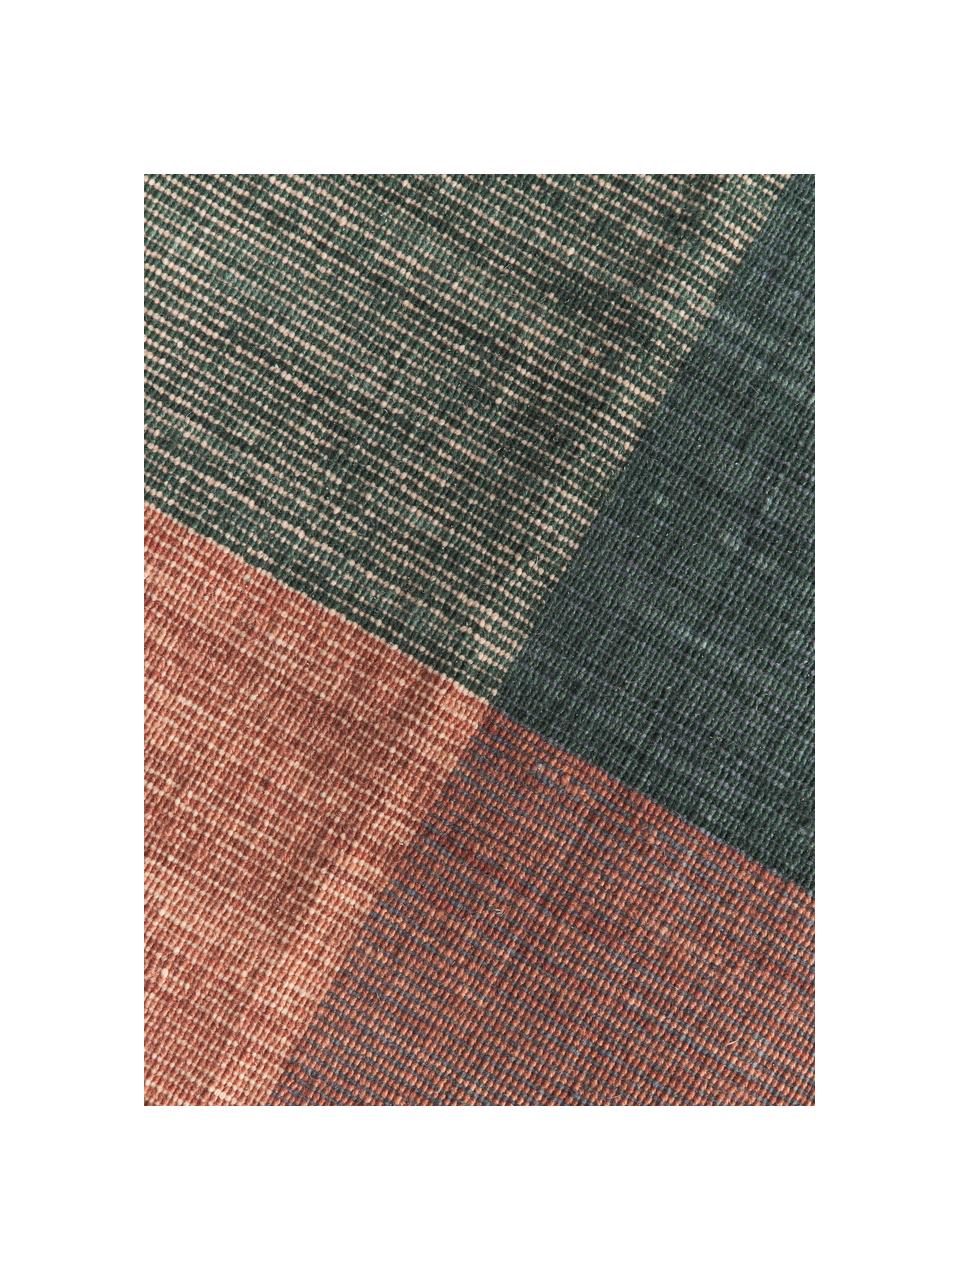 Károvaný vlnený koberec so strapcami Bliss, 80 % vlna (certifikát RWS), 20 % bavlna

V prvých týždňoch používania vlnených kobercov sa môže po niekoľkých týždňoch používania objaviť charakteristický jav uvoľňovania vlákien, Viac farieb, Š 160 x D 230 cm (veľkosť M)